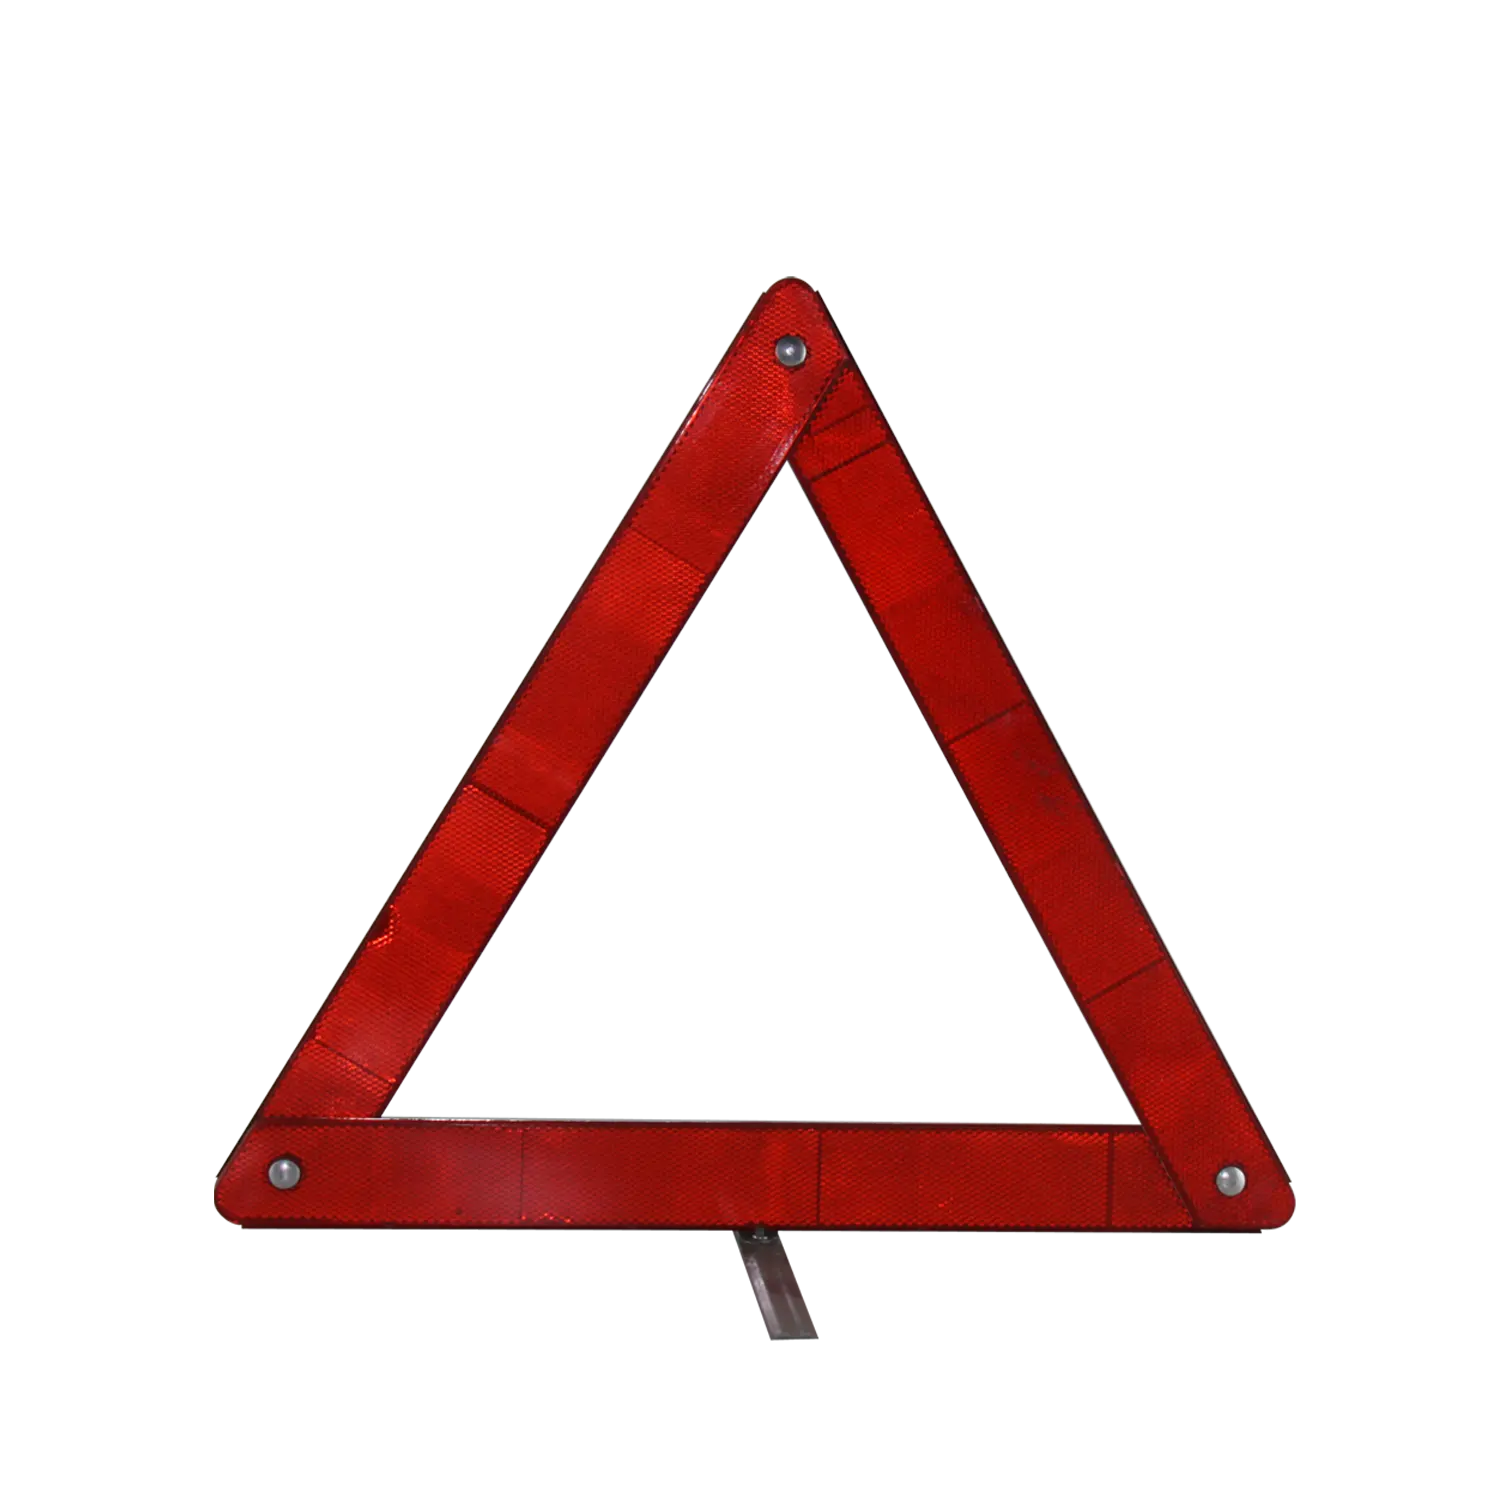 سيارة المحمولة عاكس الثلاثي مثلث أحمر المبكر تحذير السلامة على الطريق الطريق جهاز شارة مرور مثلث فوب اليها Pri